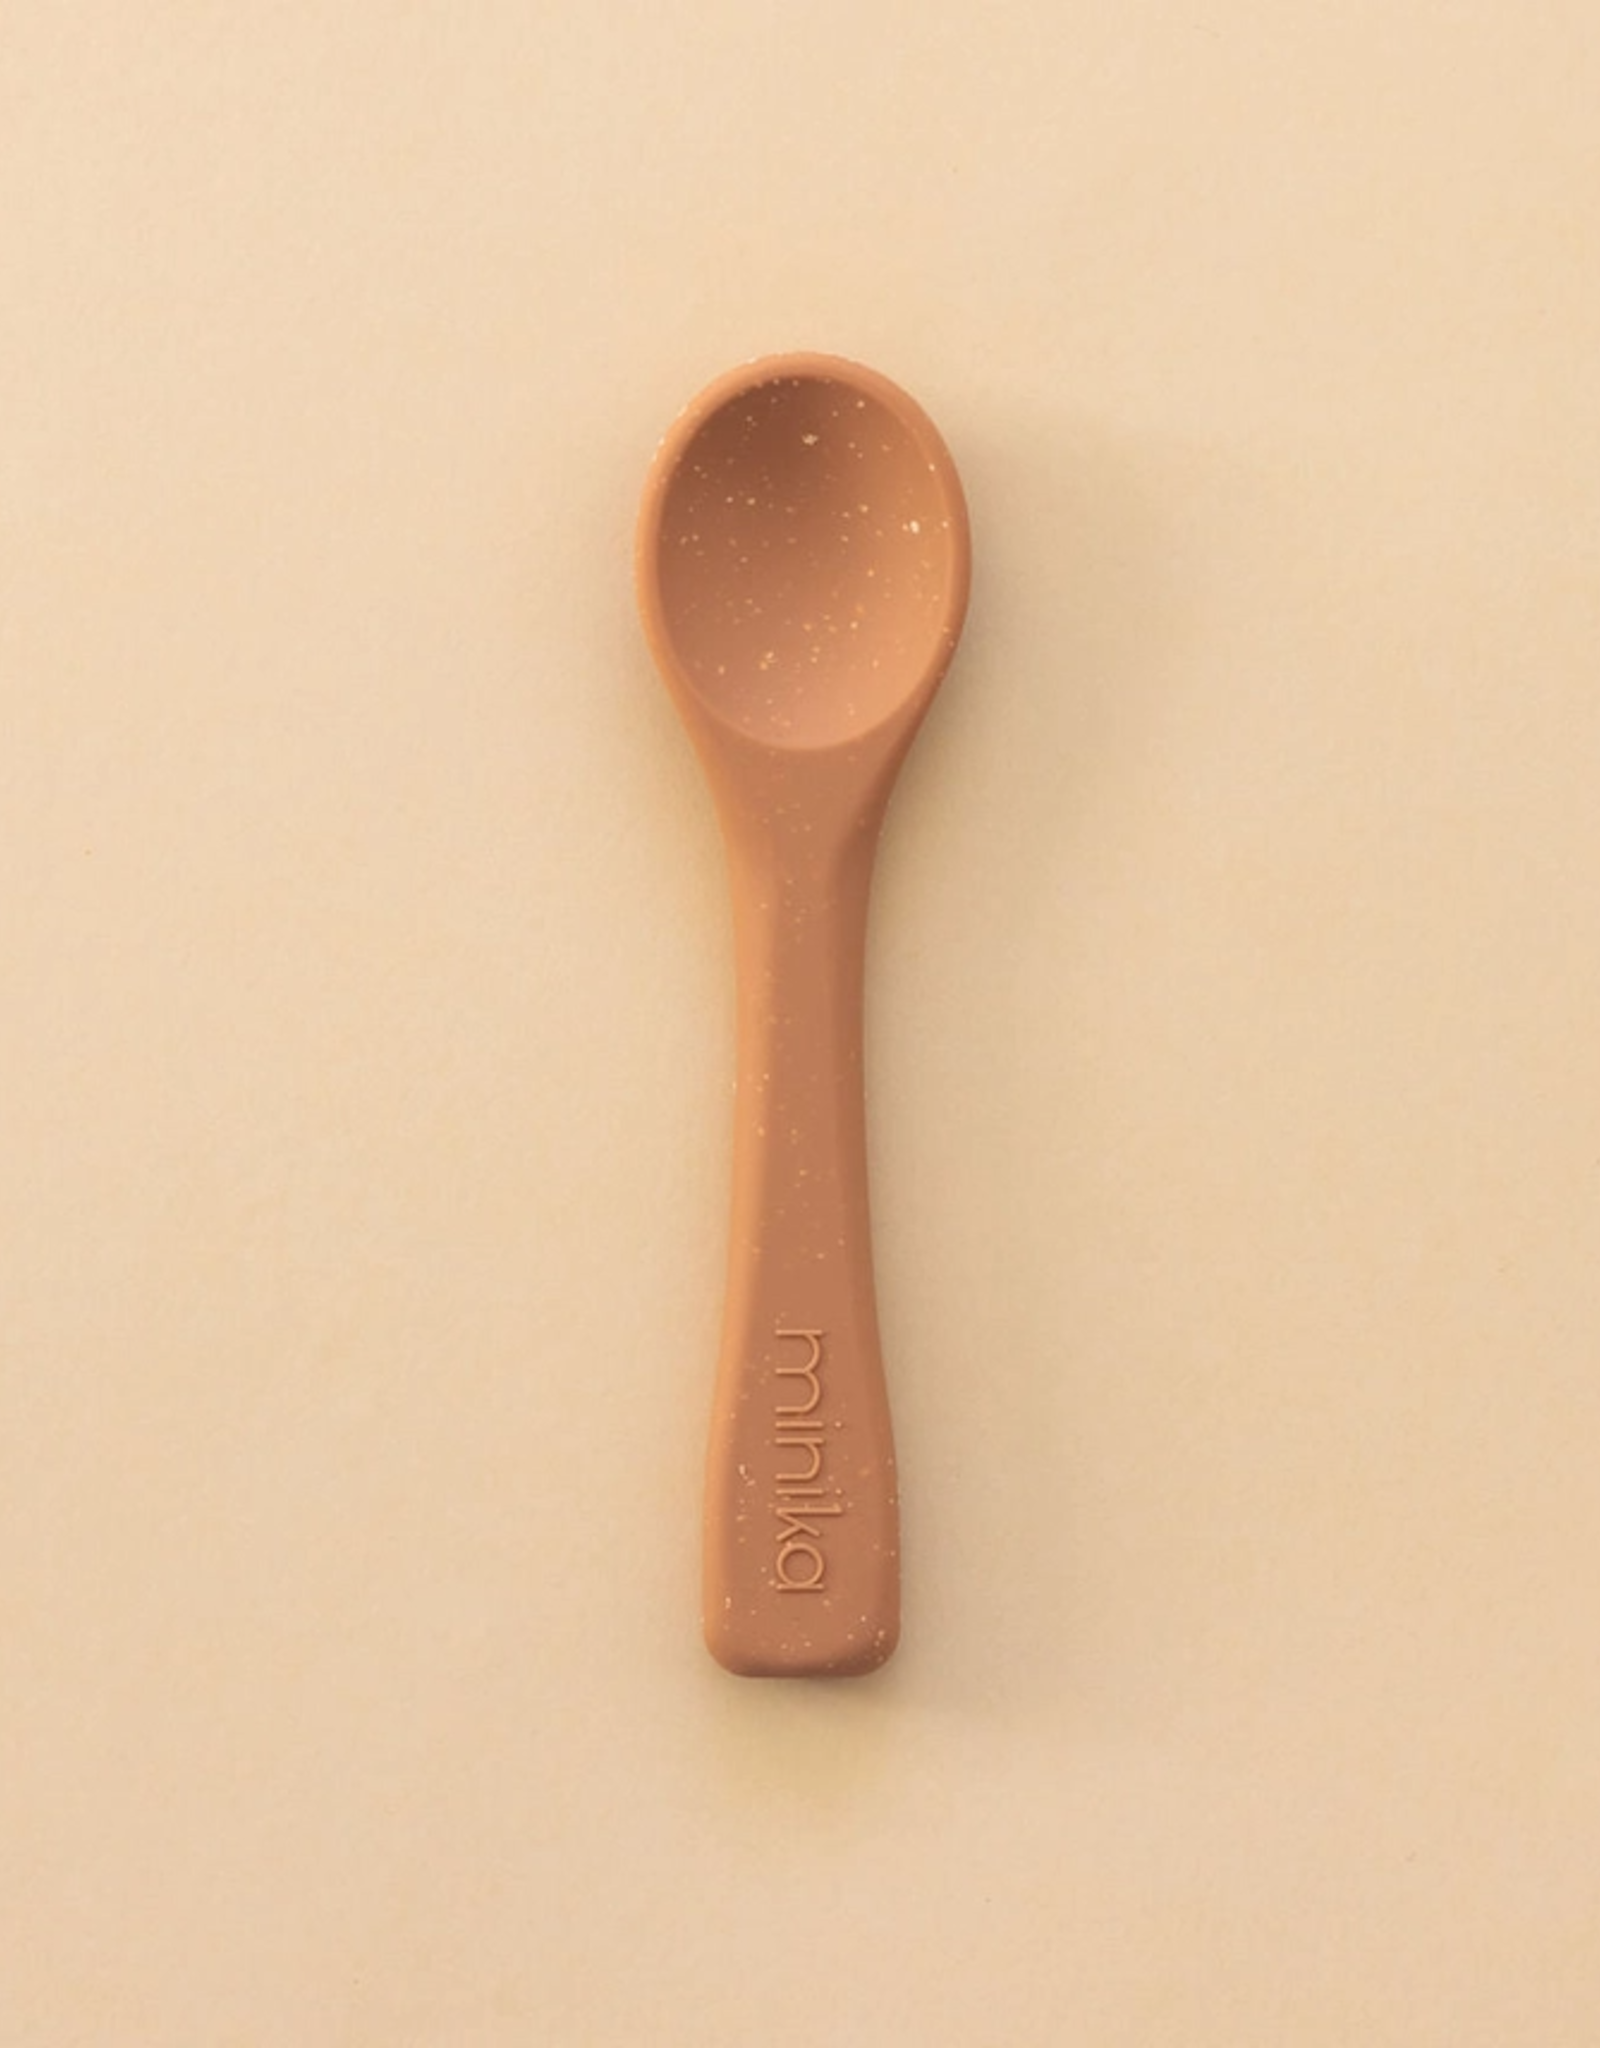 Minika Silicone Spoon, Almond